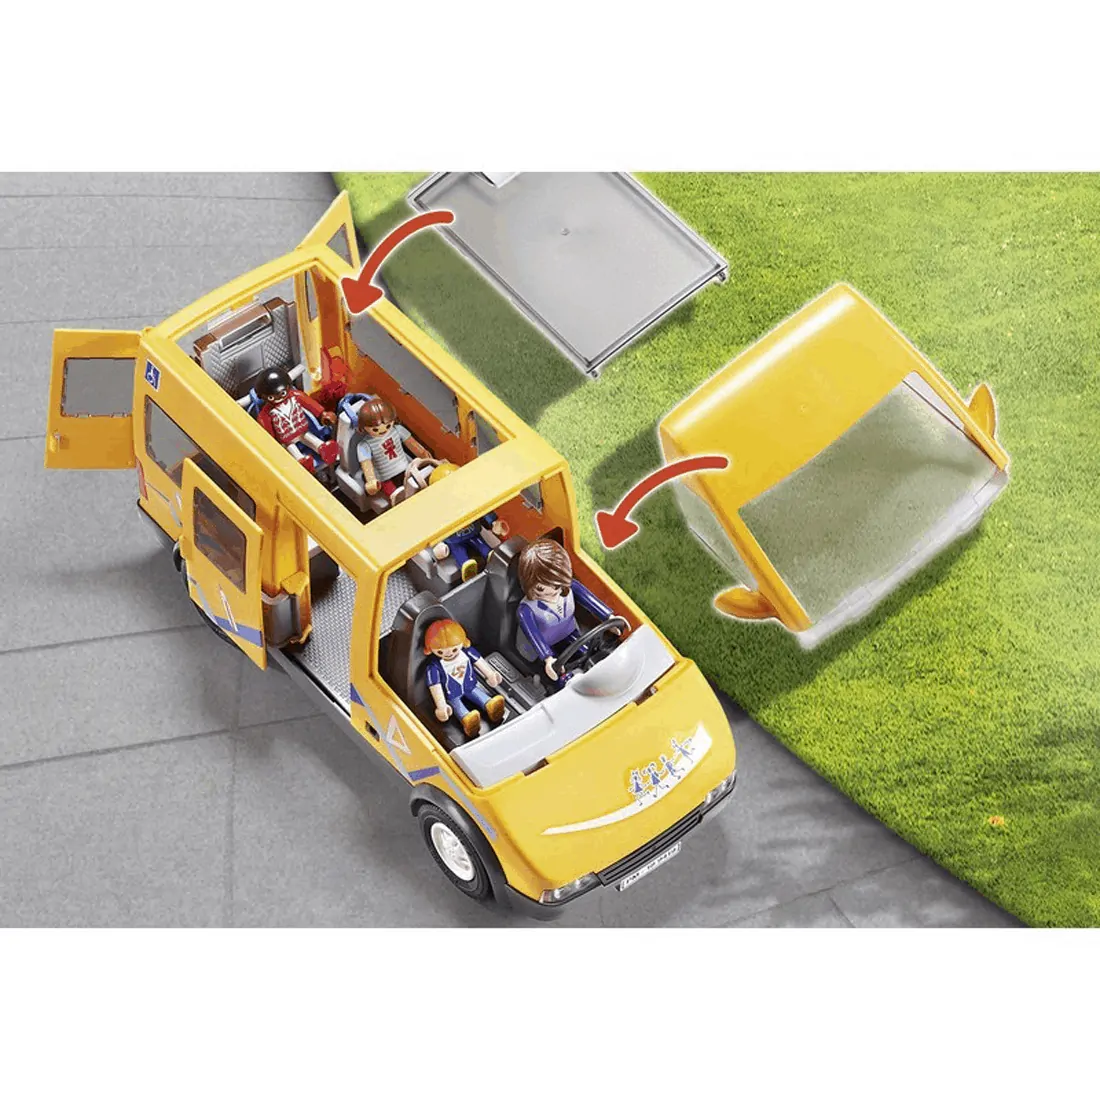 Playmobil - Σχολικό Λεωφορείο